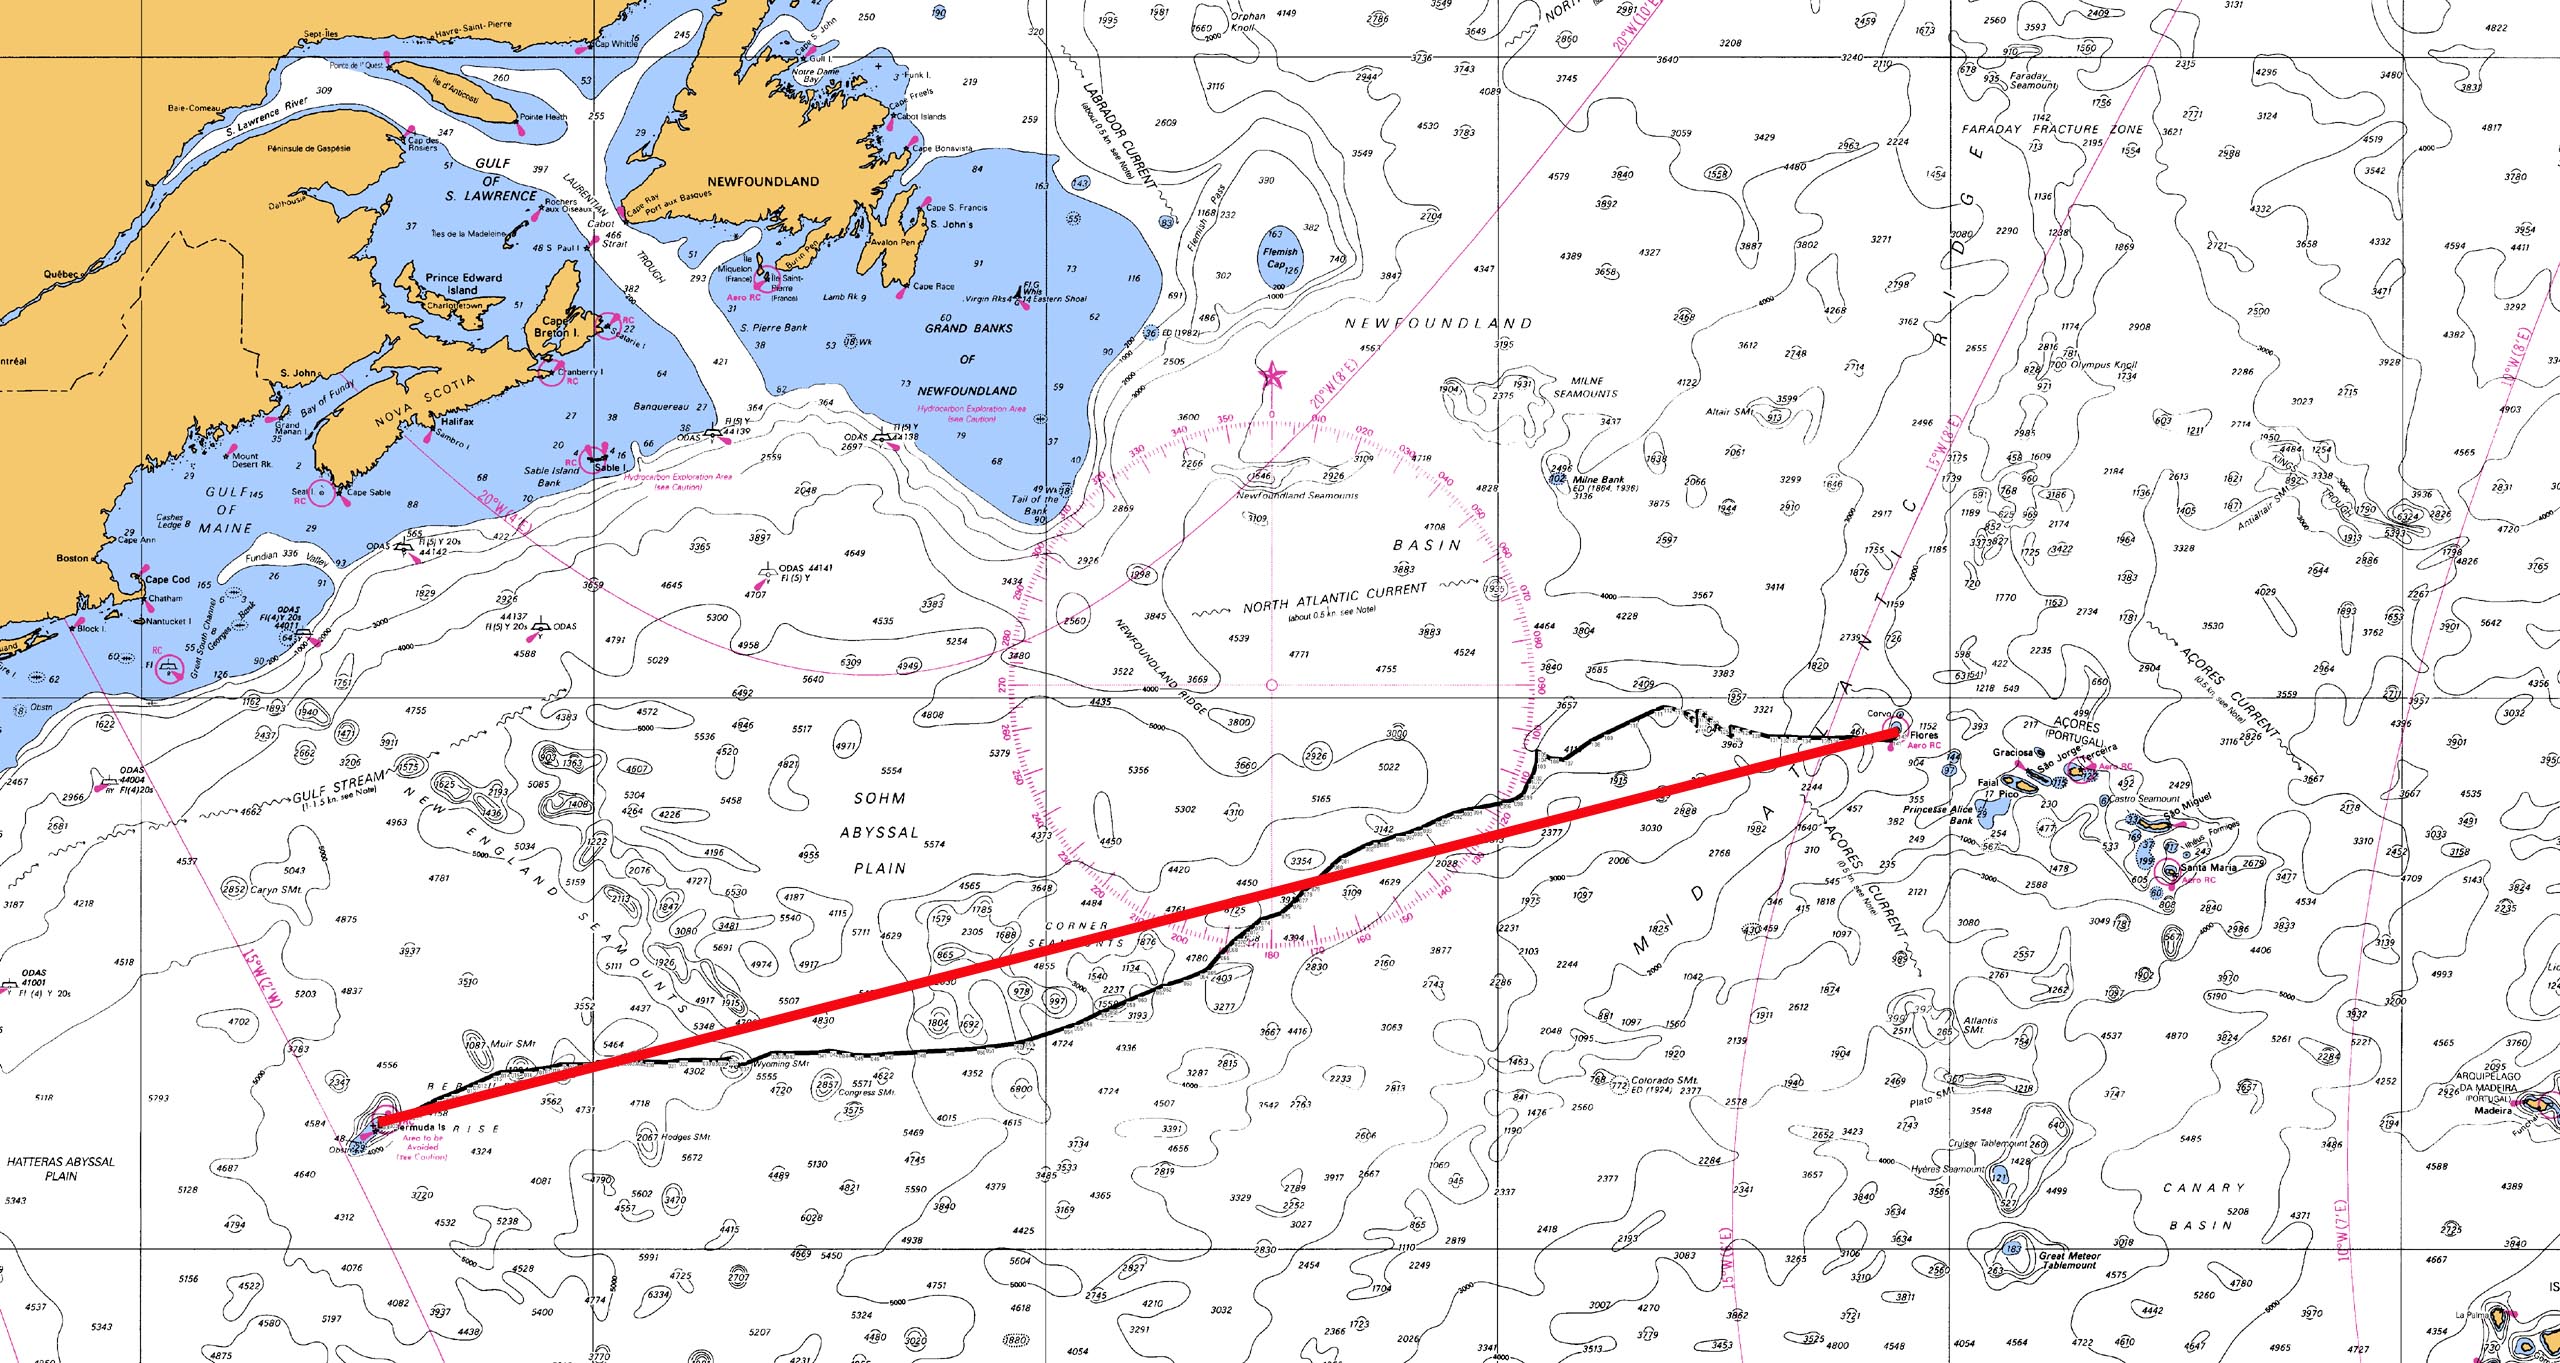 Bermuda Navigation Charts